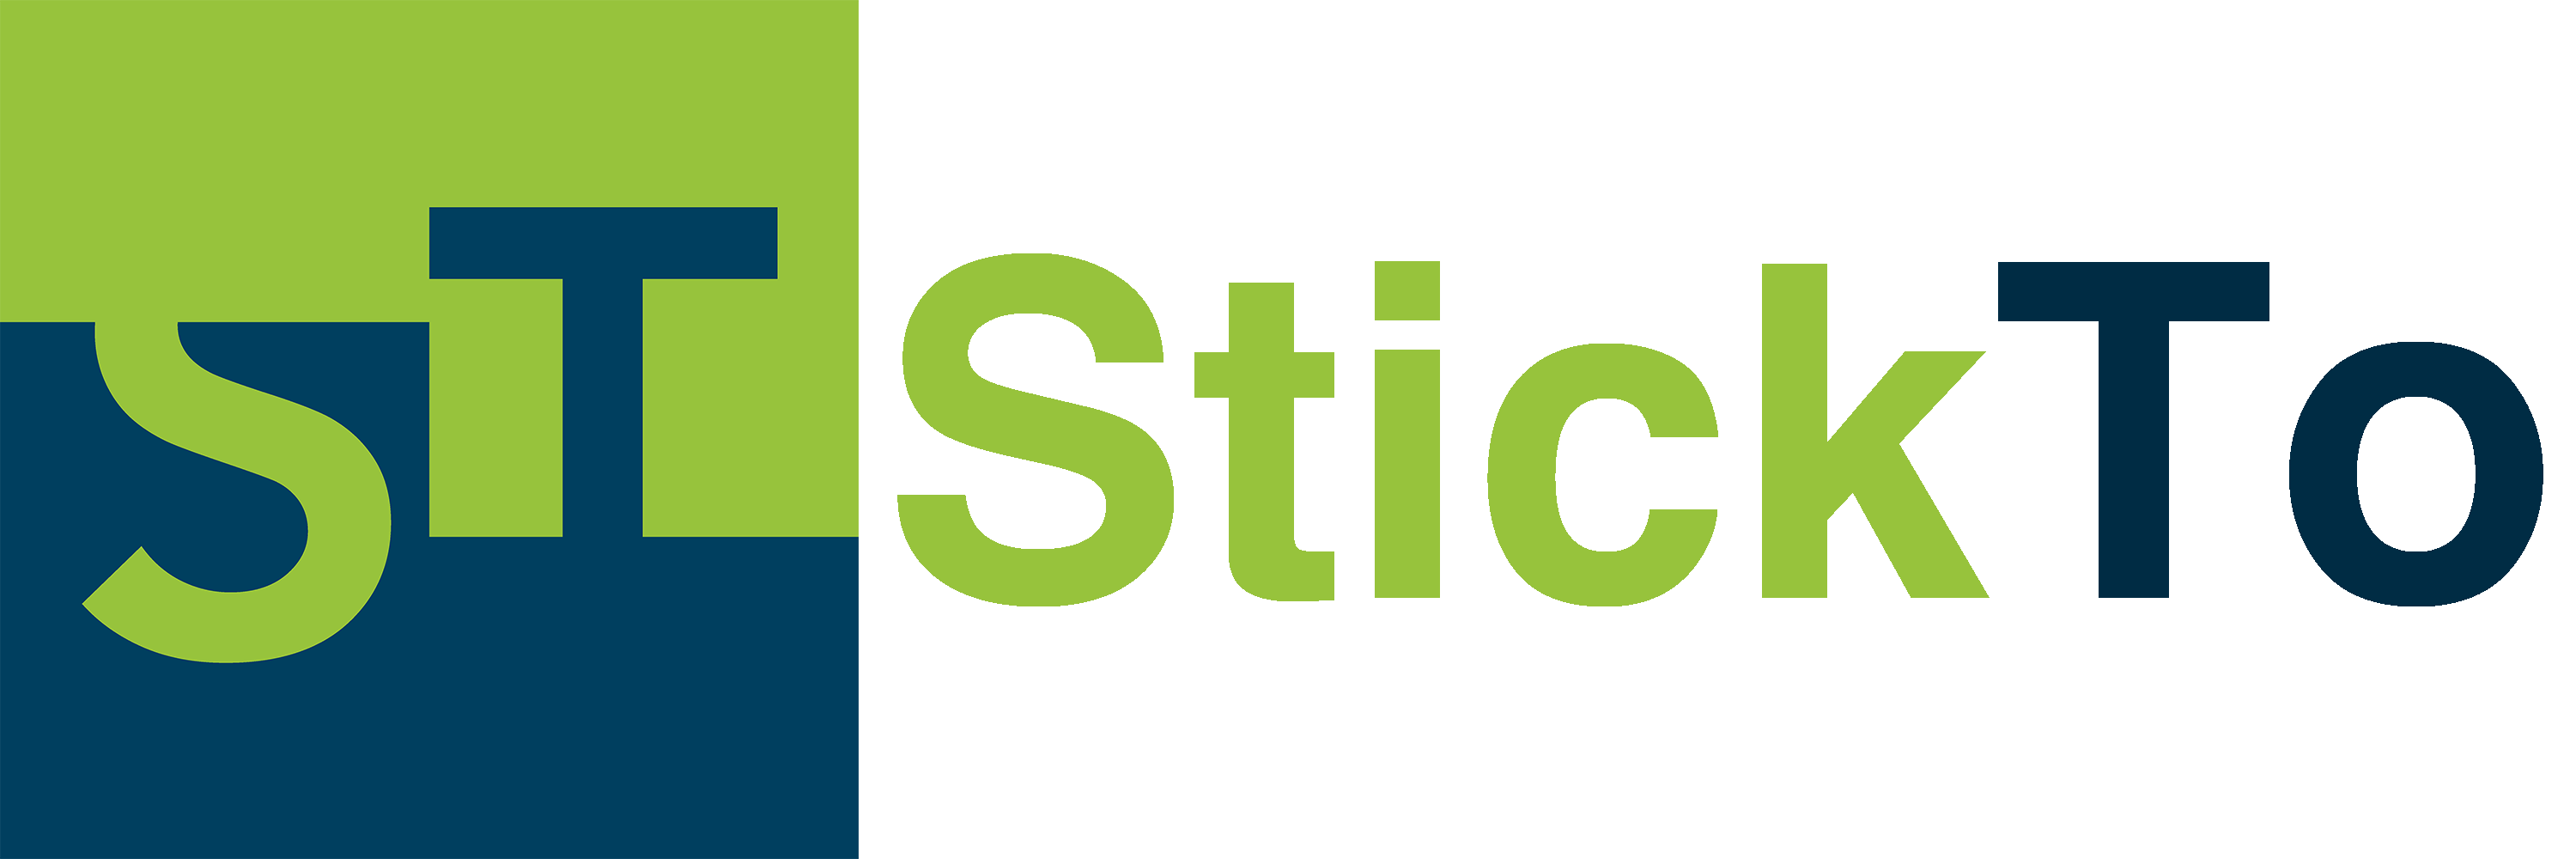 StickTo - Das soziale Netzwerk für die Berufsorientierung